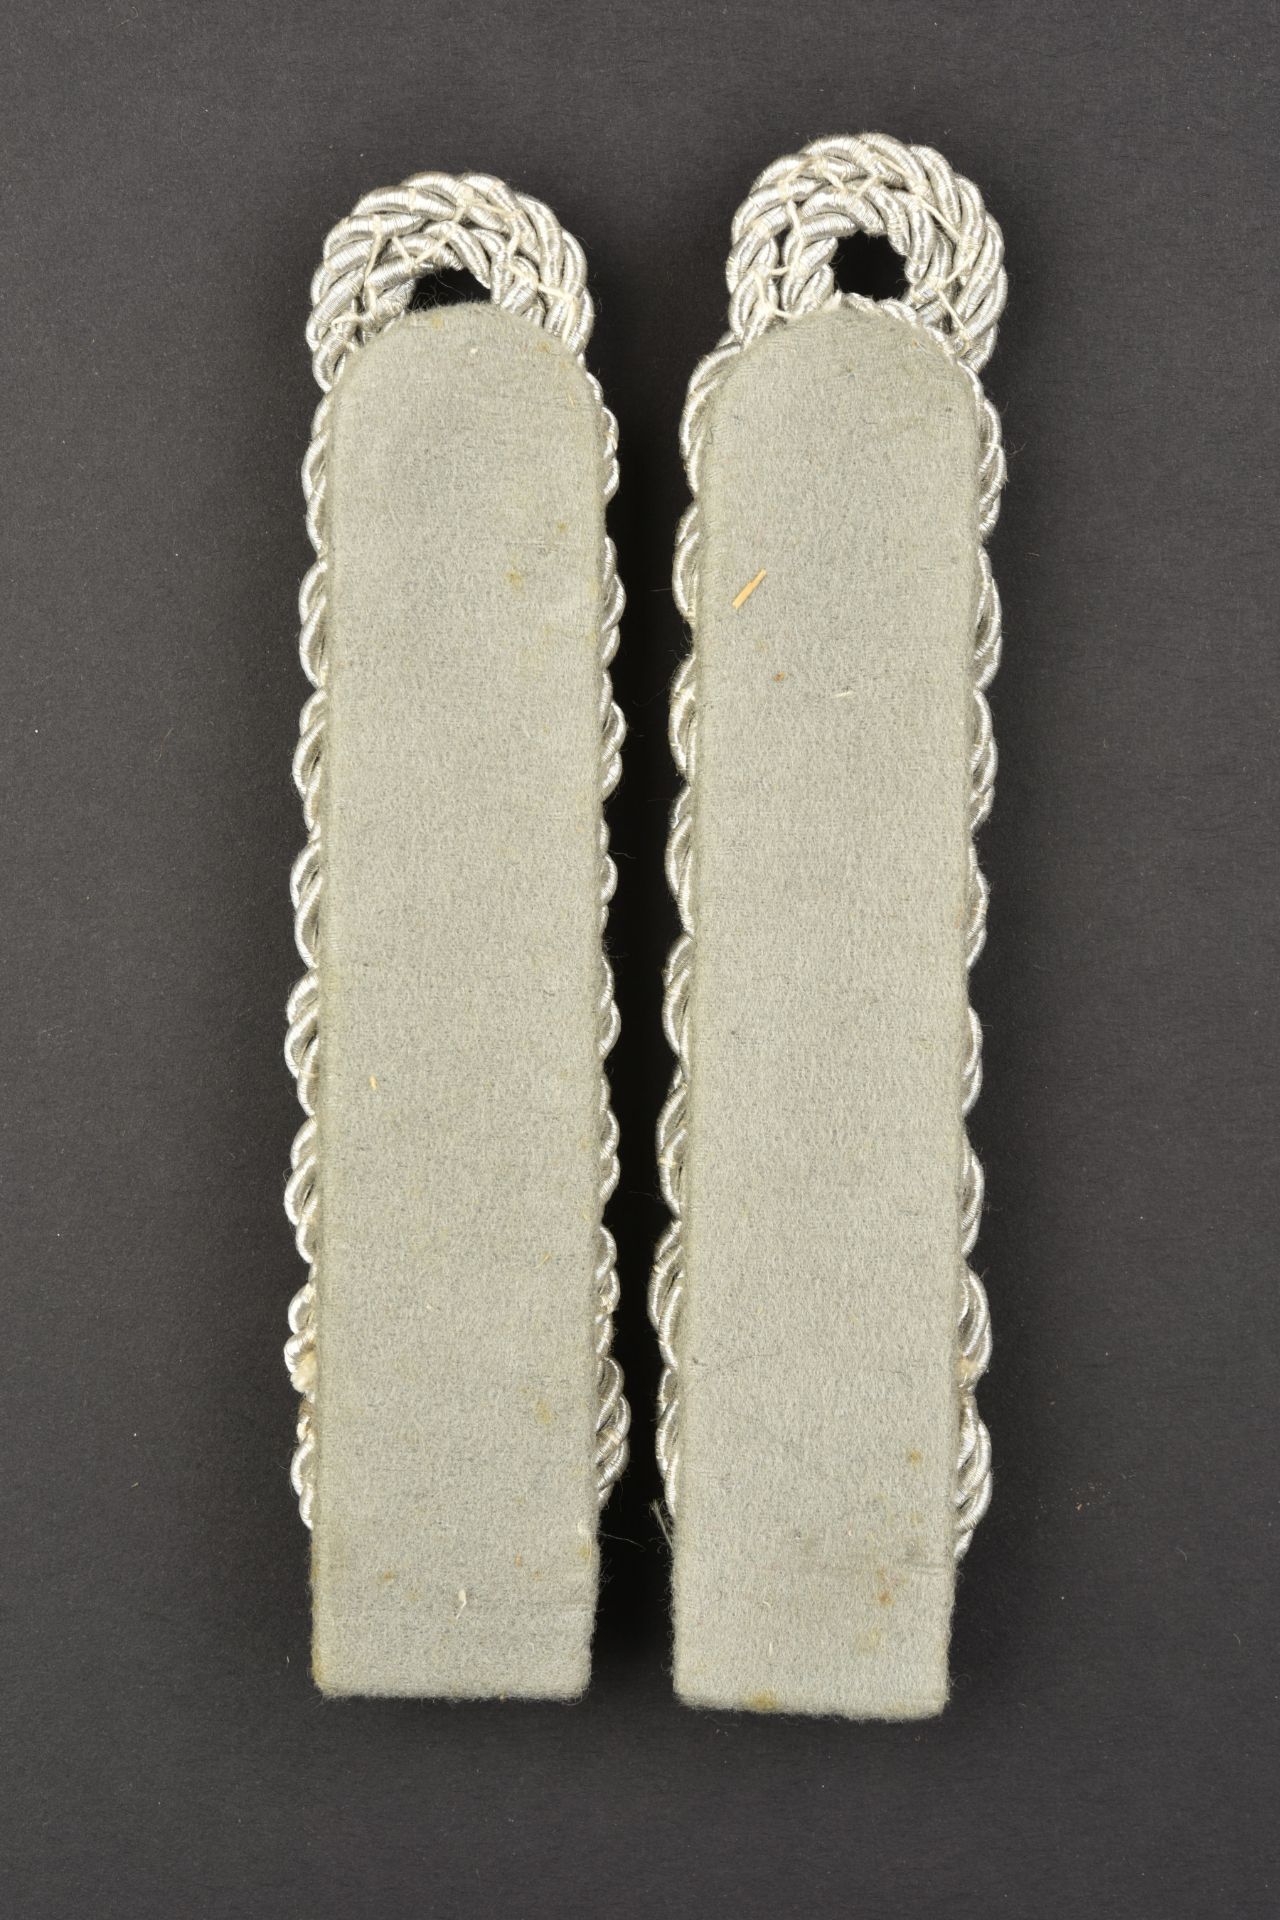 Pattes d'Žpaule DRK. DRK shoulder straps  - Bild 2 aus 2